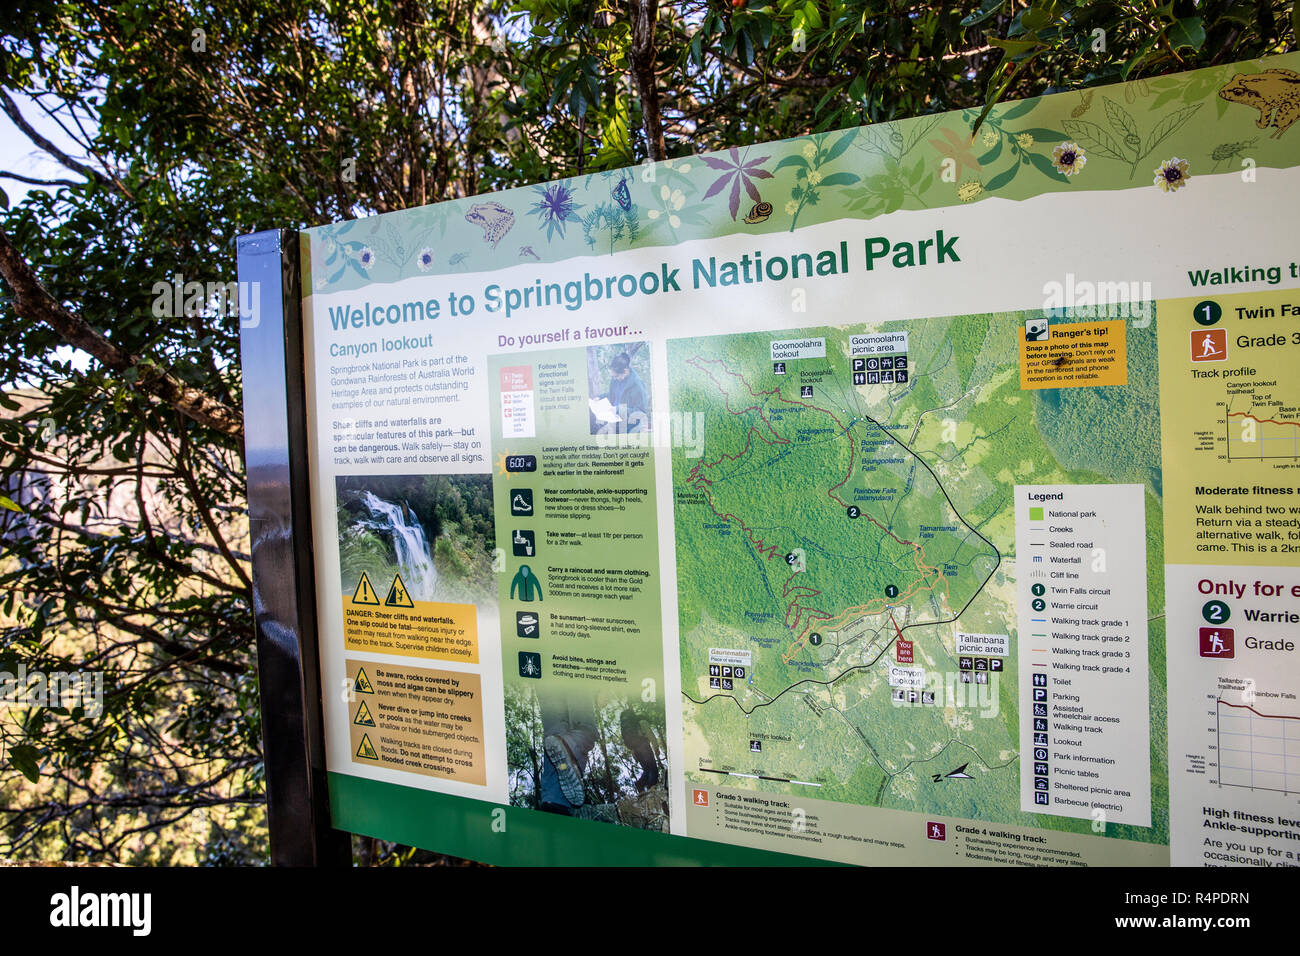 Parc national de springbook route carte et promenades,Gold Coast hinterland, Australie Banque D'Images